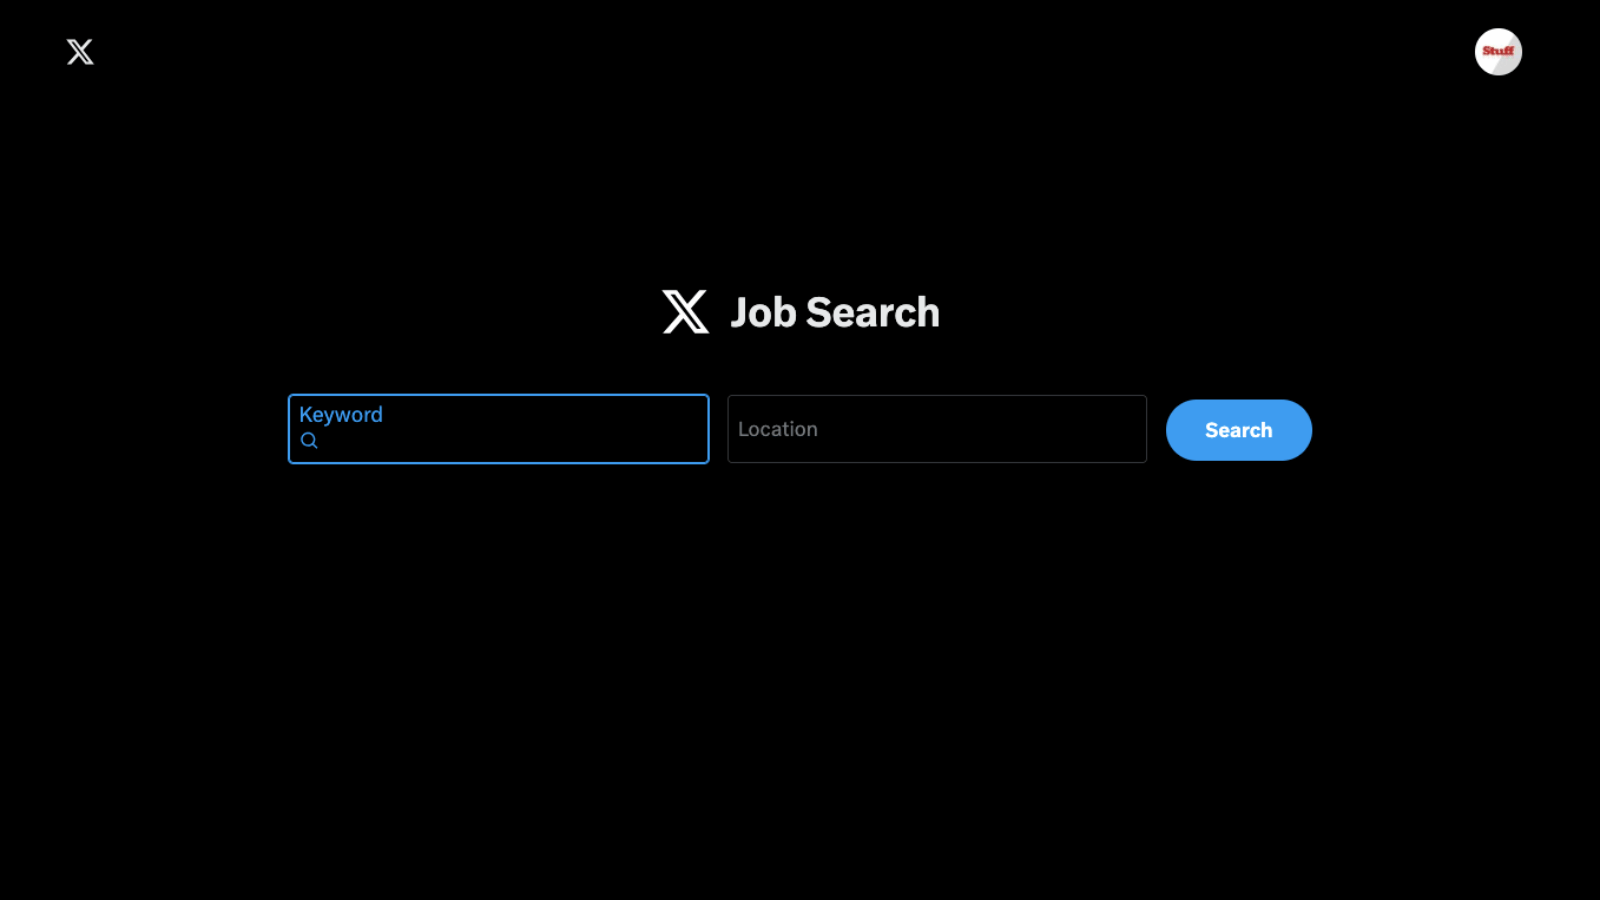 X Job Search (LS; LinkedIn)